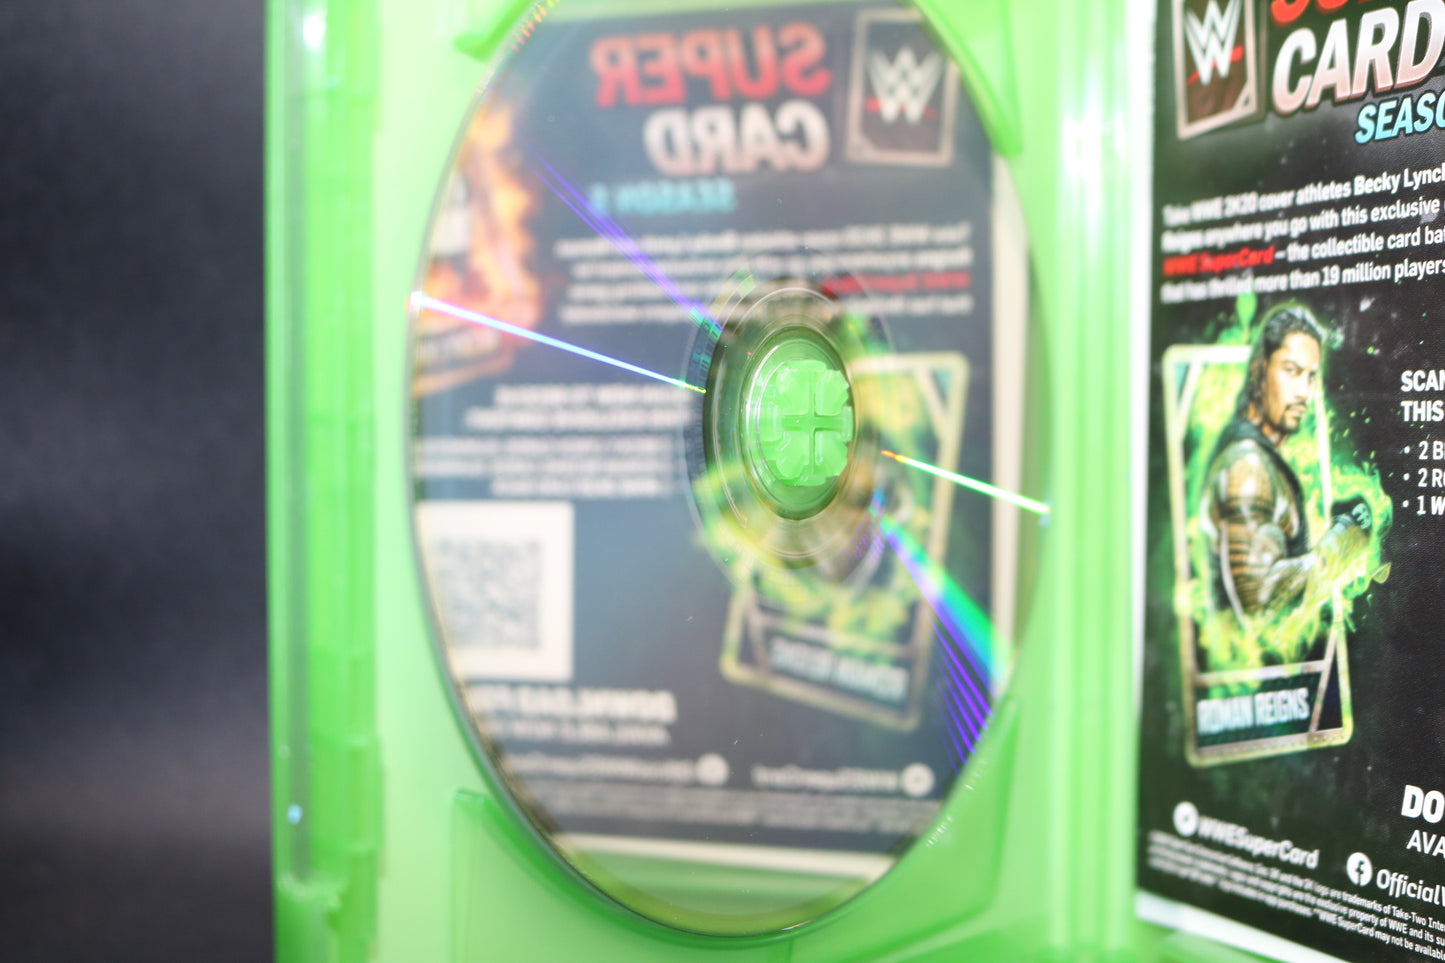 WWE 2K20 (Microsoft Xbox One) Wrestling Video Game